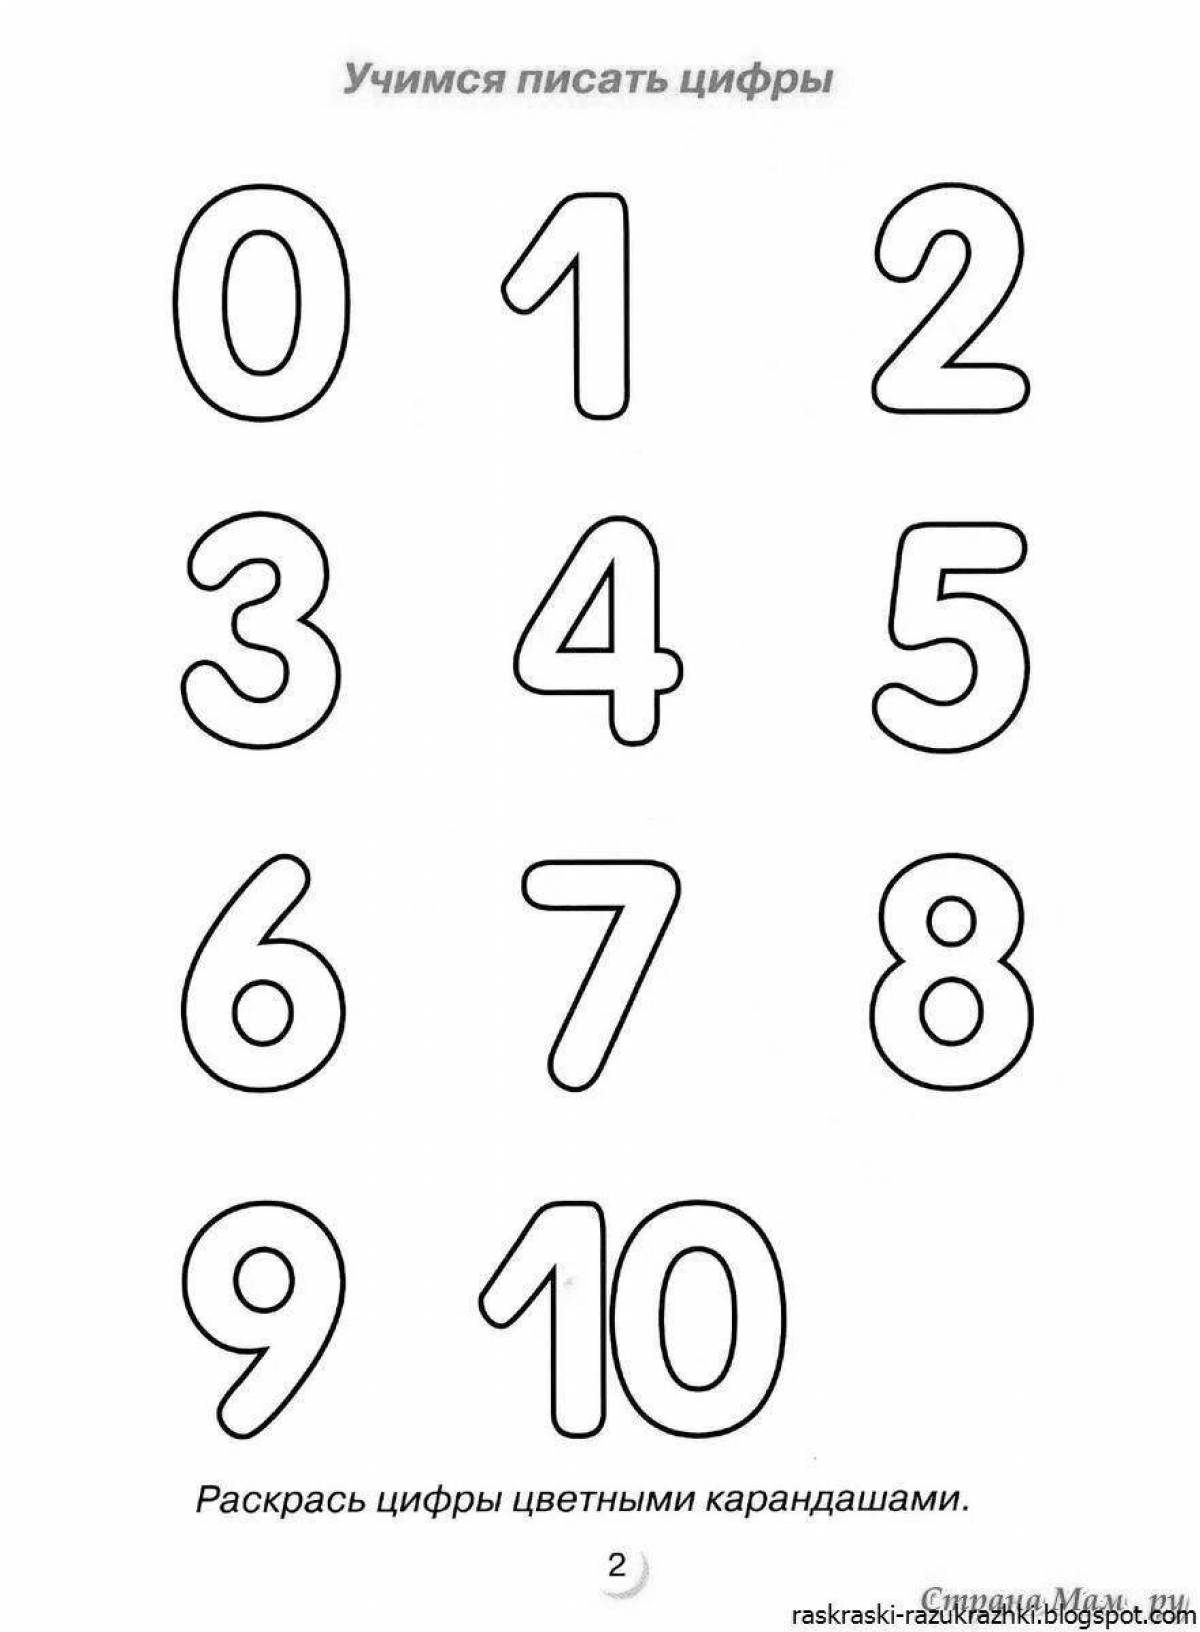 Привлекательная страница раскраски комбинации цифр и букв для детей